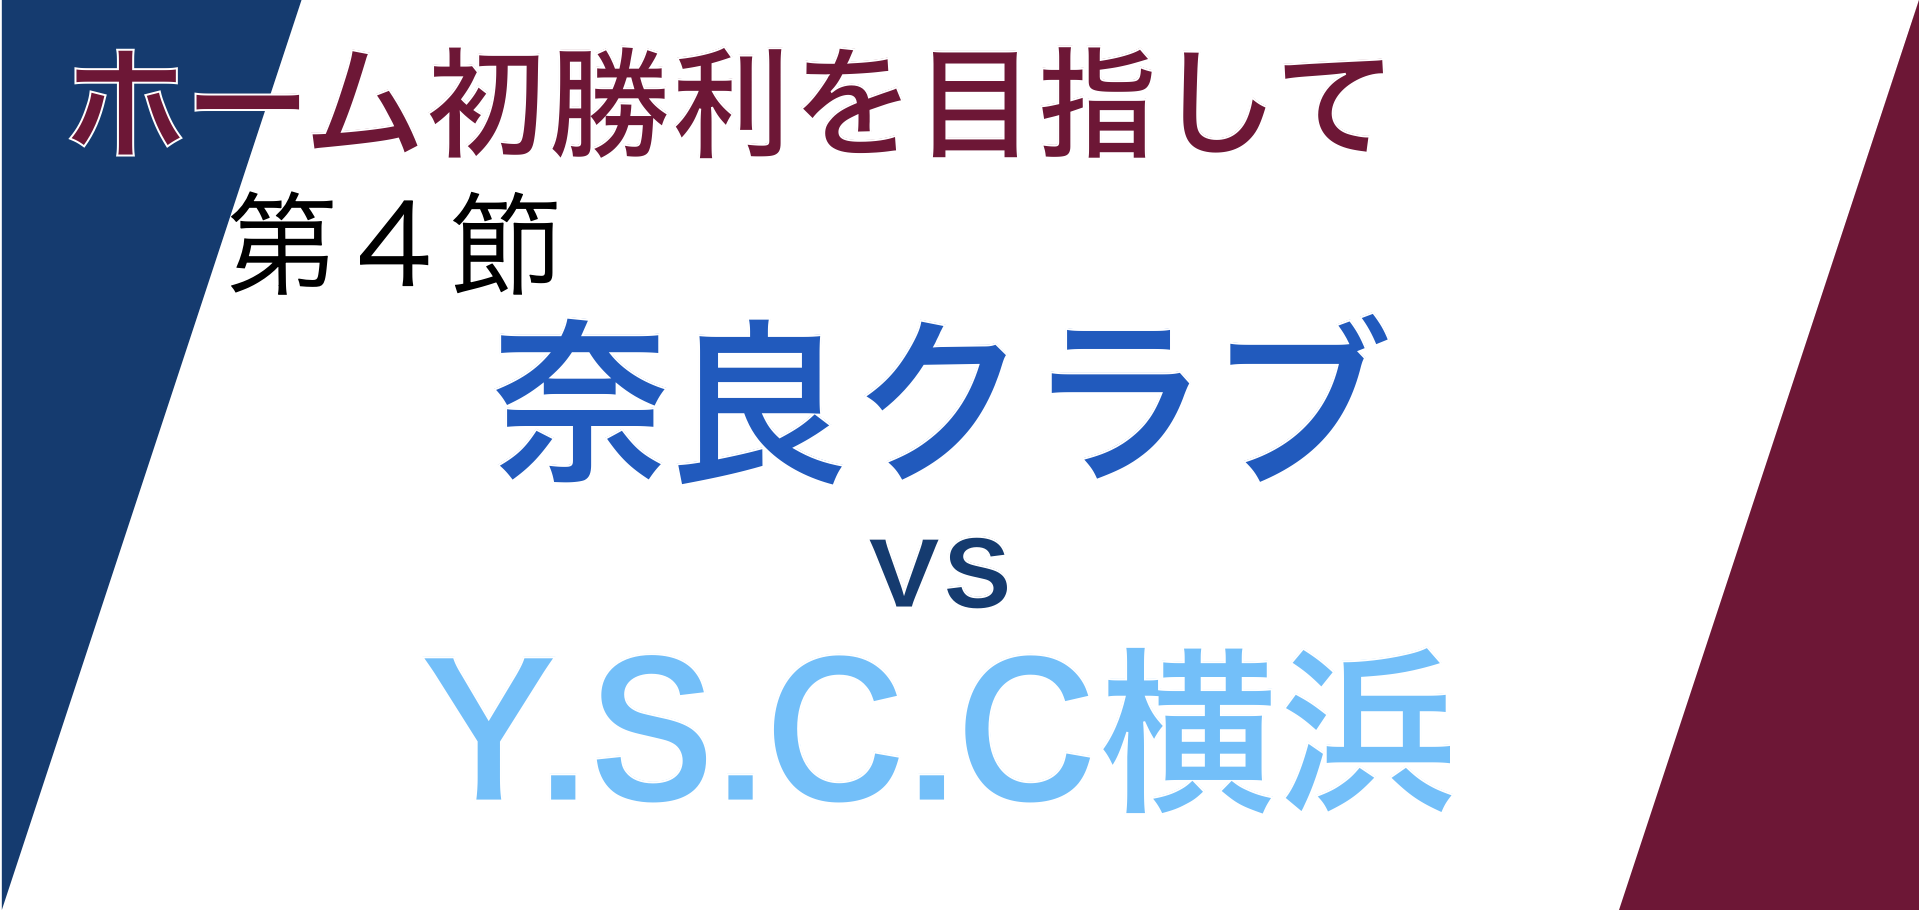 J3第四節「奈良クラブvsY.S.C.C横浜」